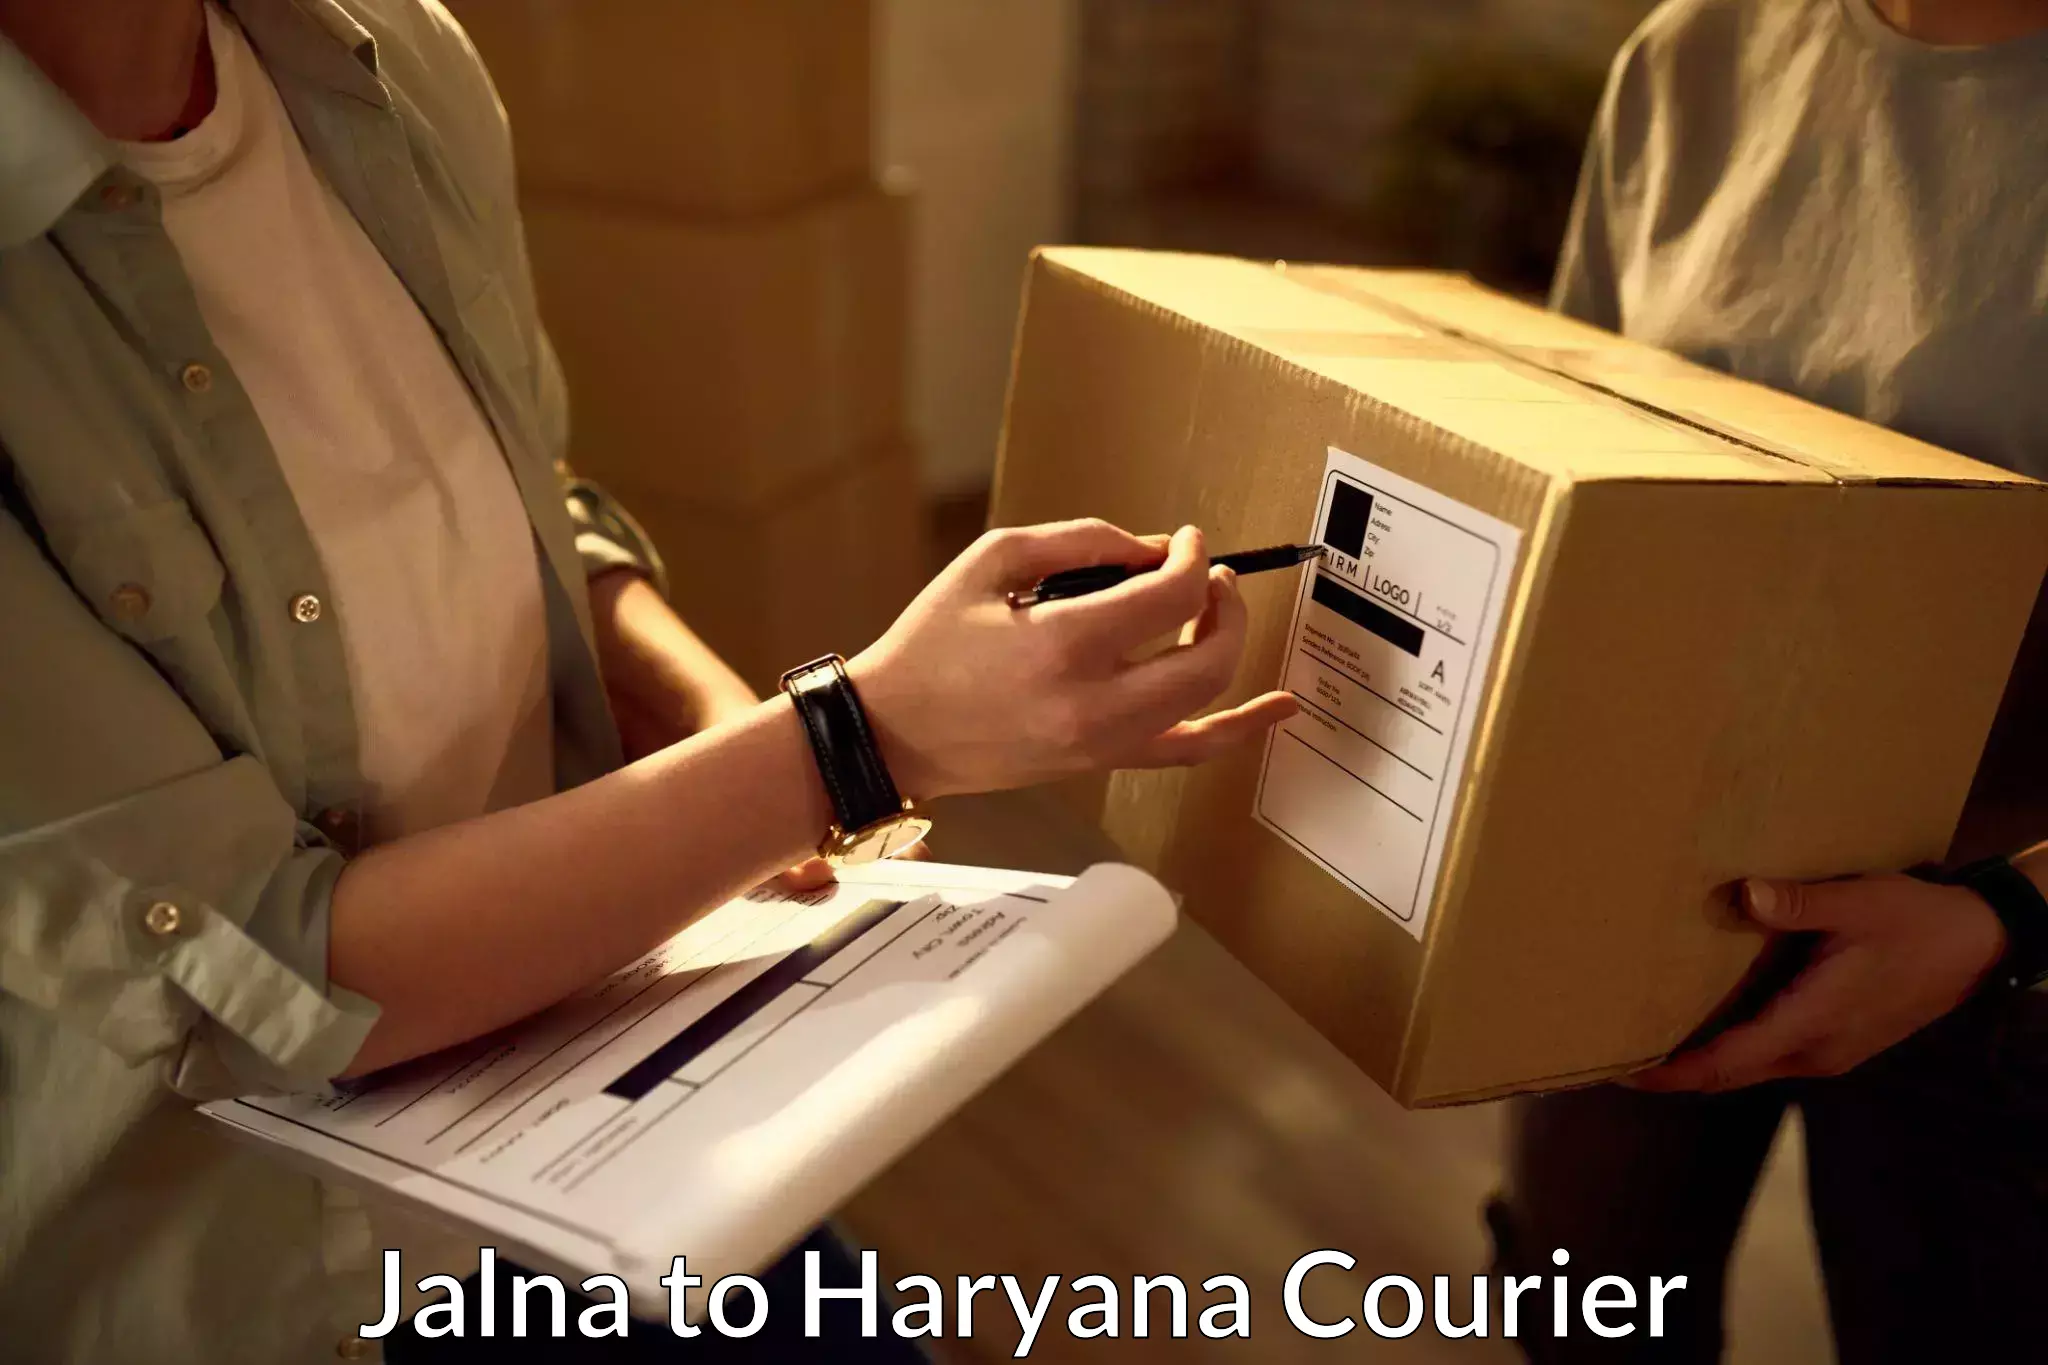 Customer-centric shipping in Jalna to Julana